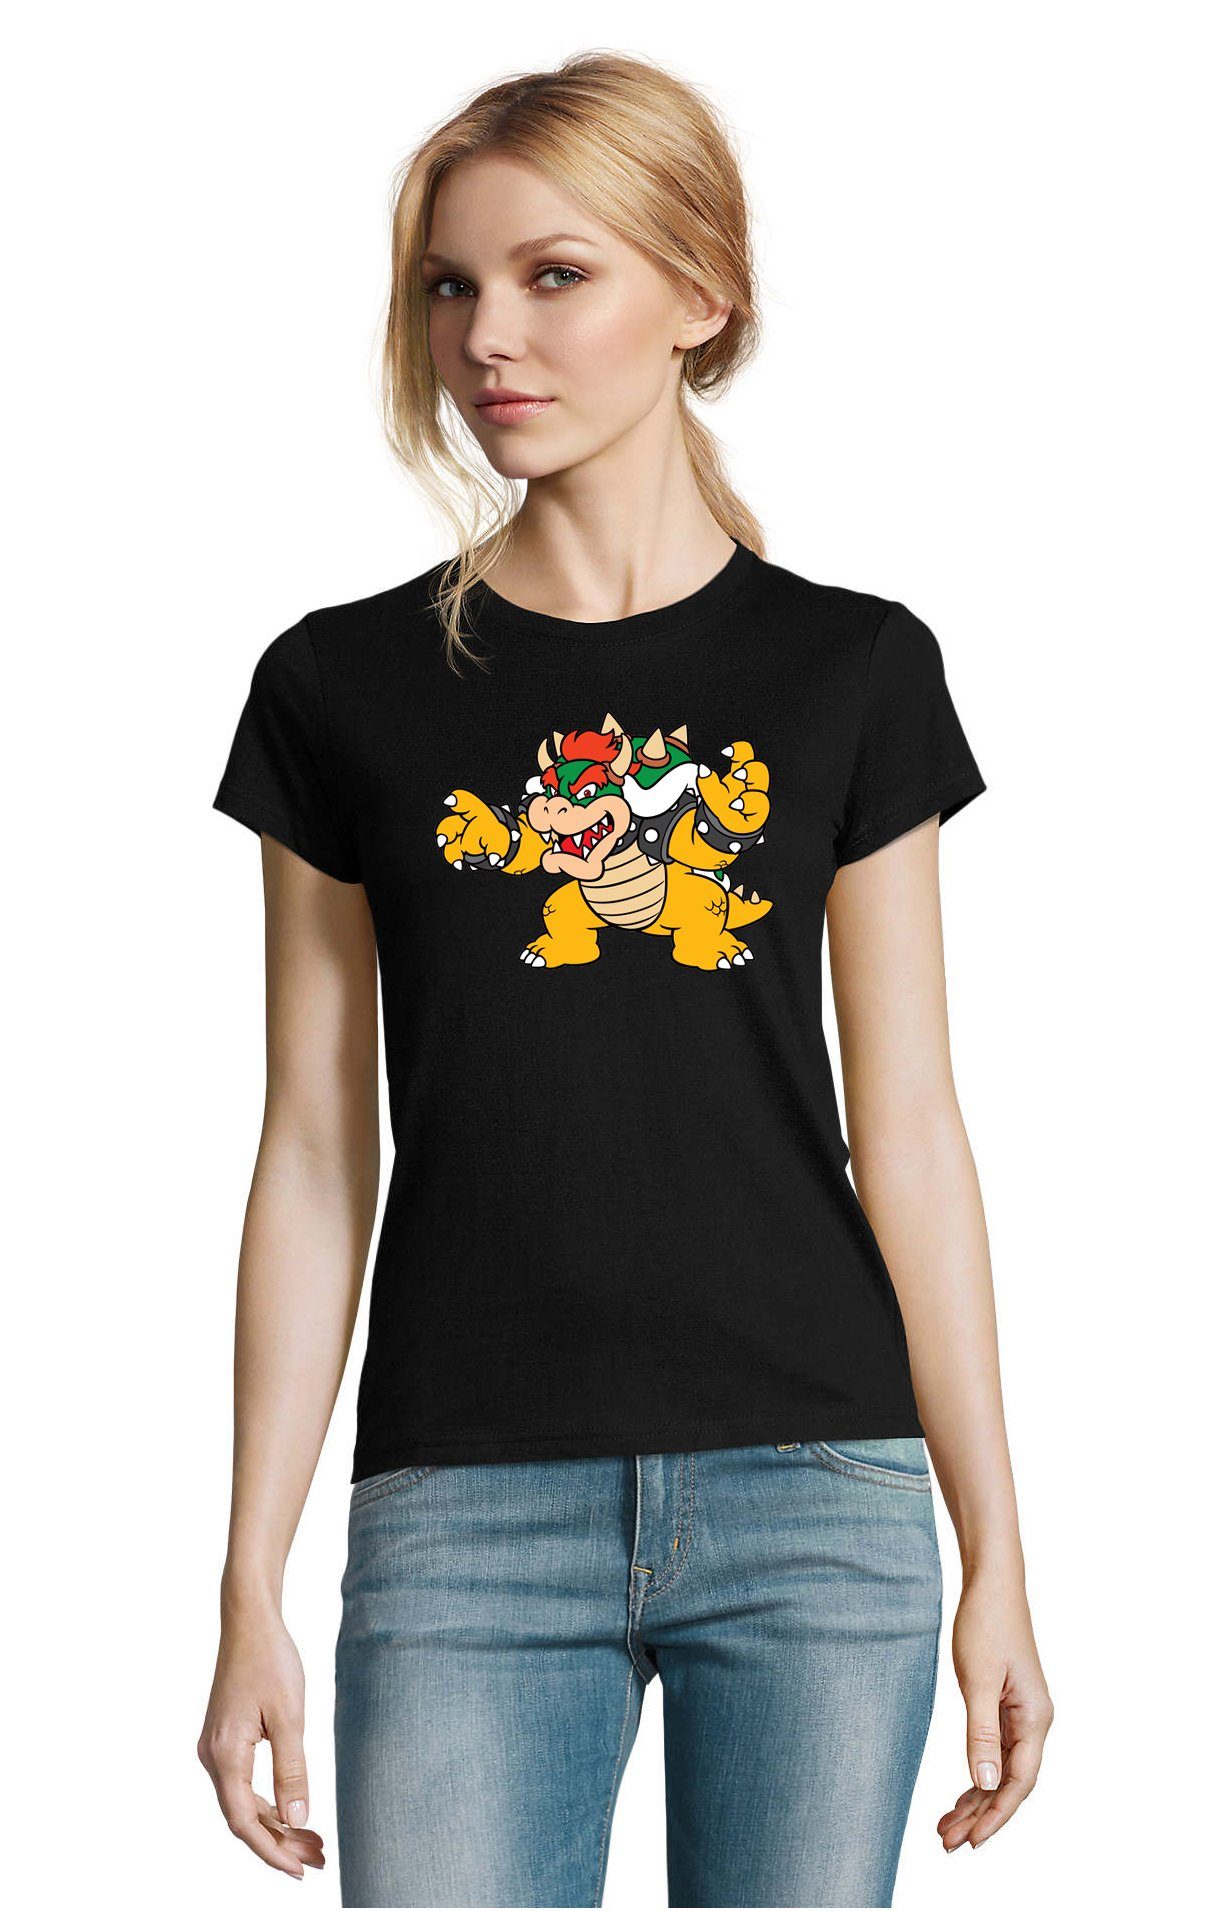 Yoshi Schwarz Game Bowser Konsole Gaming Gamer Damen Nintendo & Mario T-Shirt Brownie Blondie Luigi